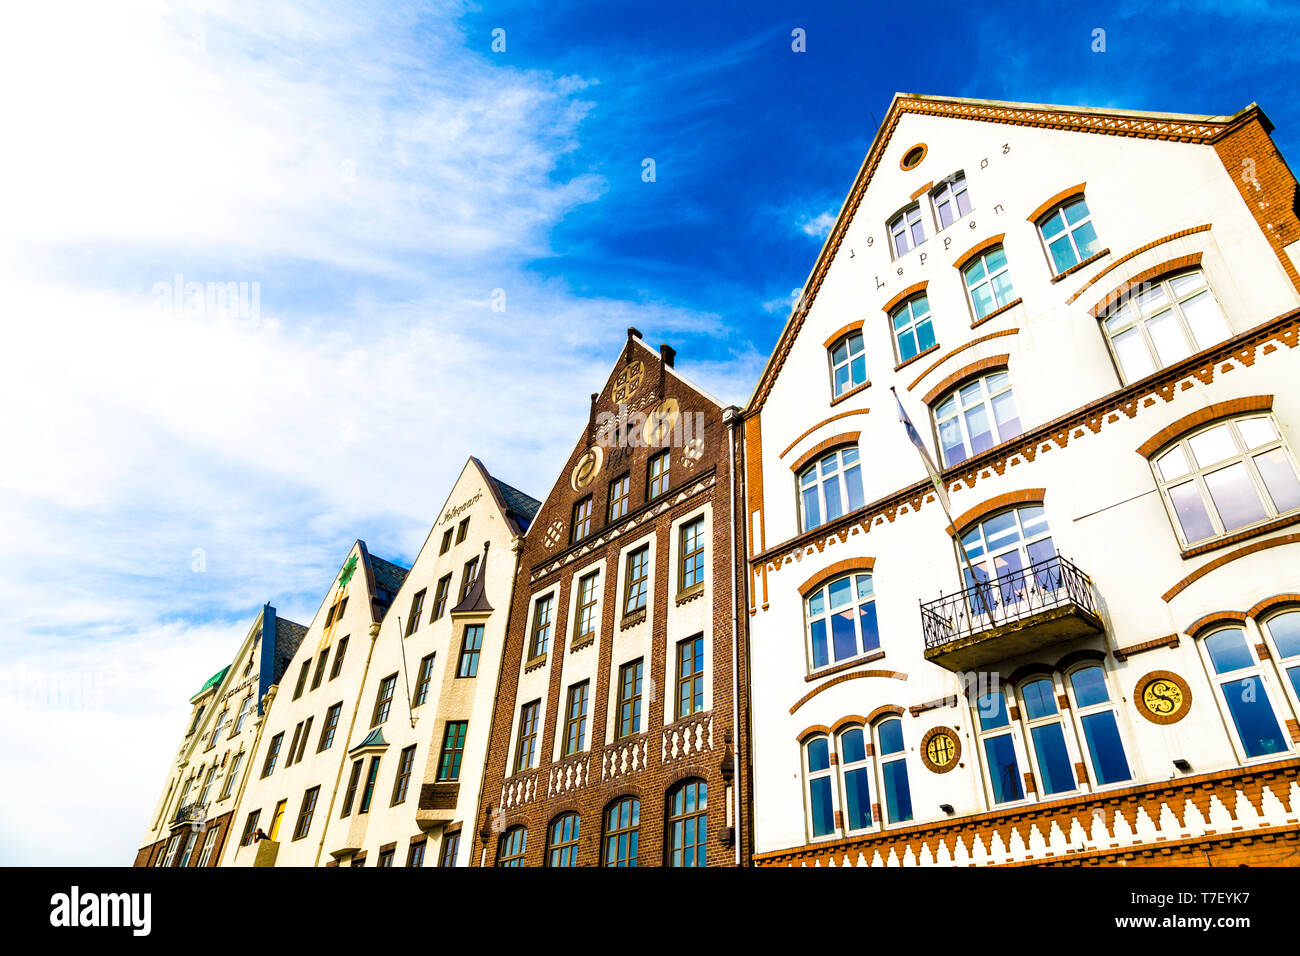 Historic hanseatic buildings in Bryggen, Bergen, Norway Stock Photo